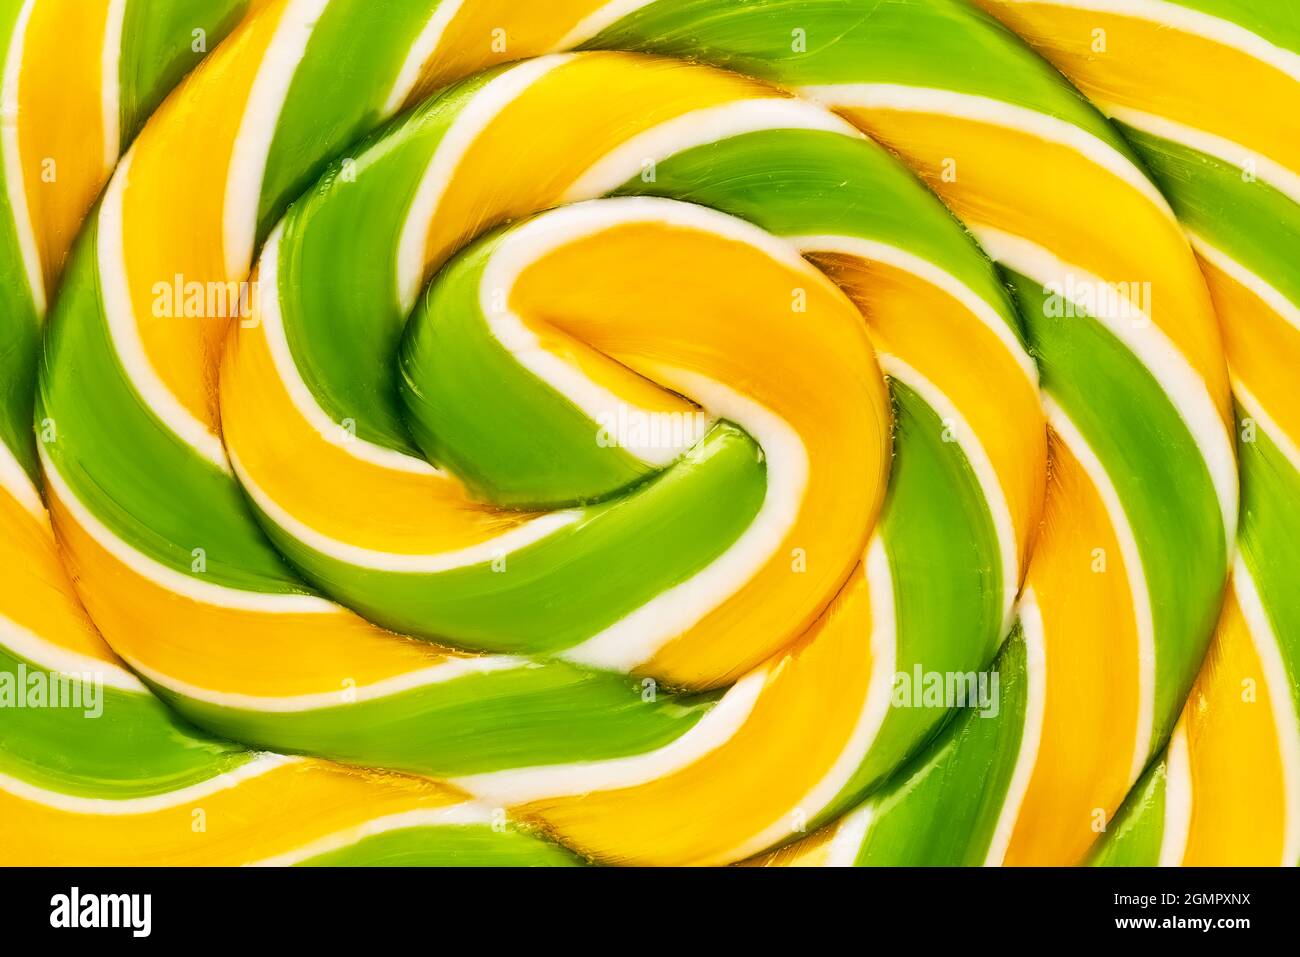 Eine Nahaufnahme eines großen gelb-grünen Lollipops. Kann für den Hintergrund, Draufsicht verwendet werden. Stockfoto